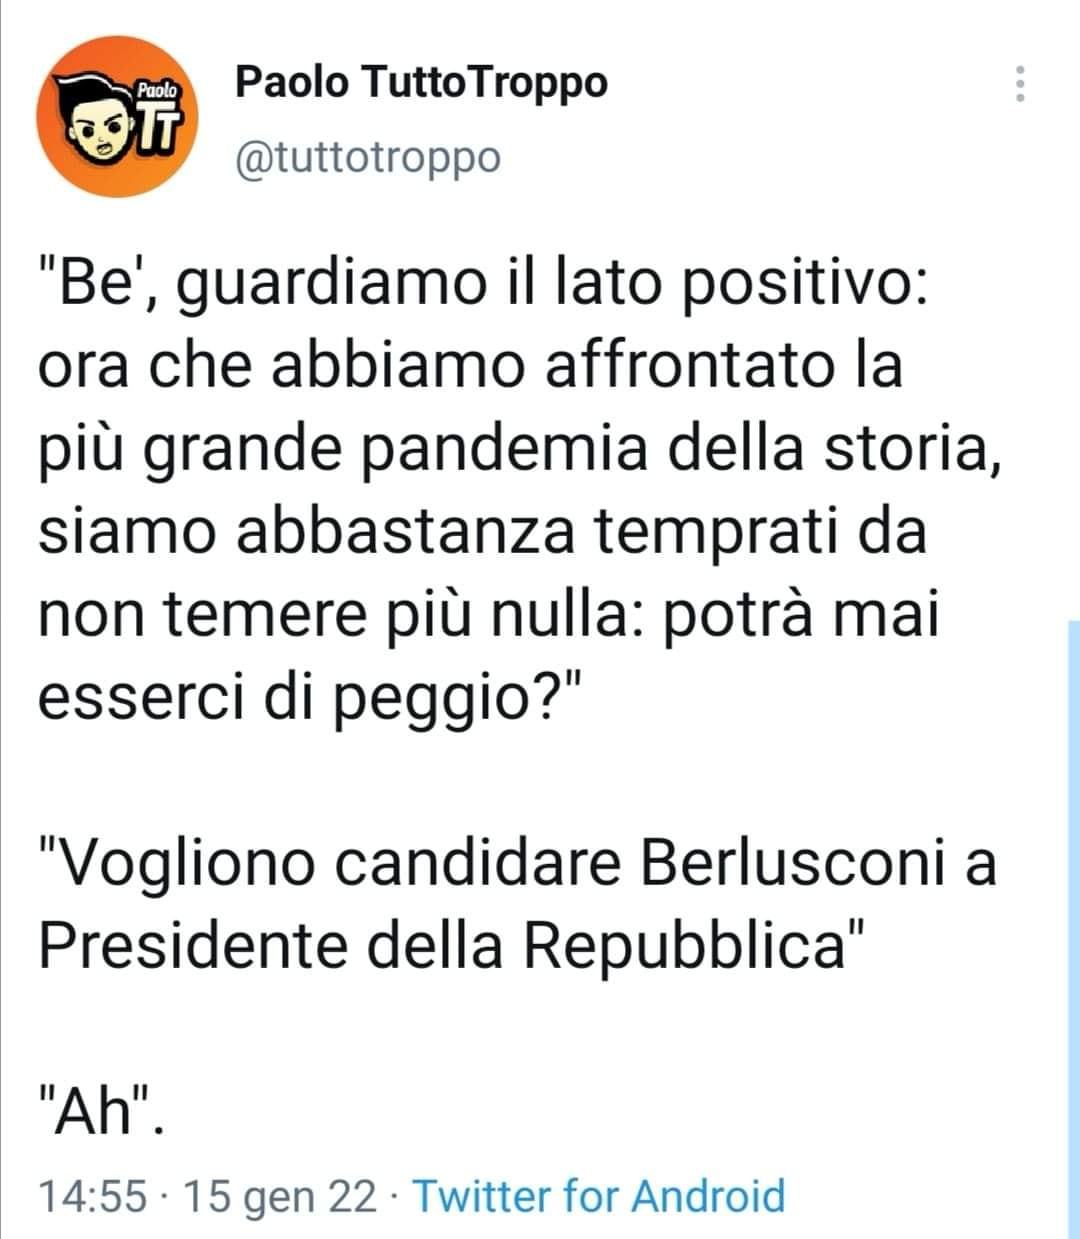 Paolo TuttoTroppo